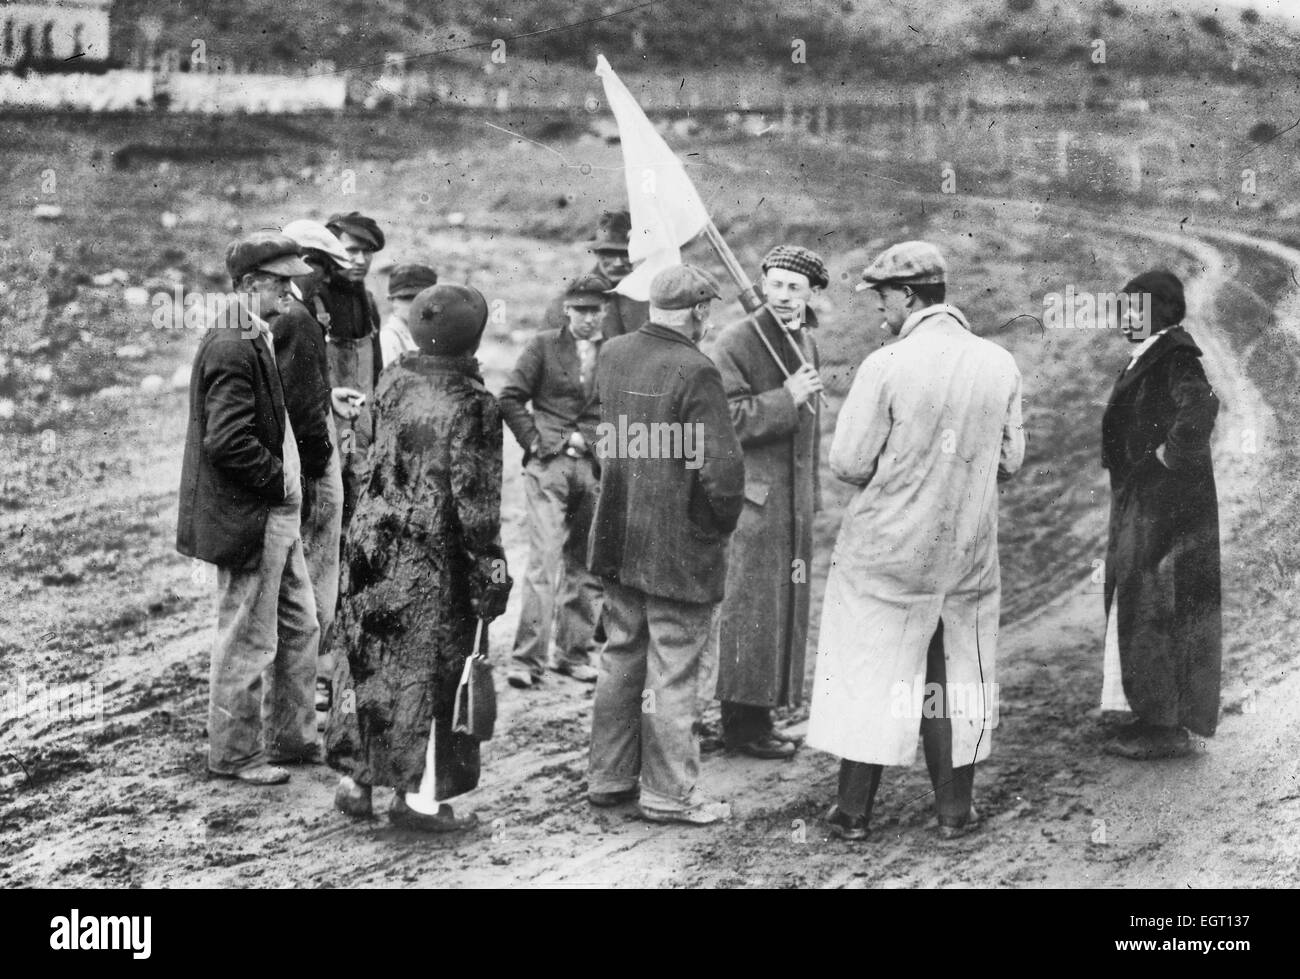 Los corresponsales bajo bandera de tregua! Los acontecimientos relativos a la masacre de Ludlow, durante el cual un campamento de mineros llamativo en Ludlow Colorado fue atacada por la Guardia Nacional de Colorado, el 20 de abril de 1914. Forbes, Colorado Foto de stock